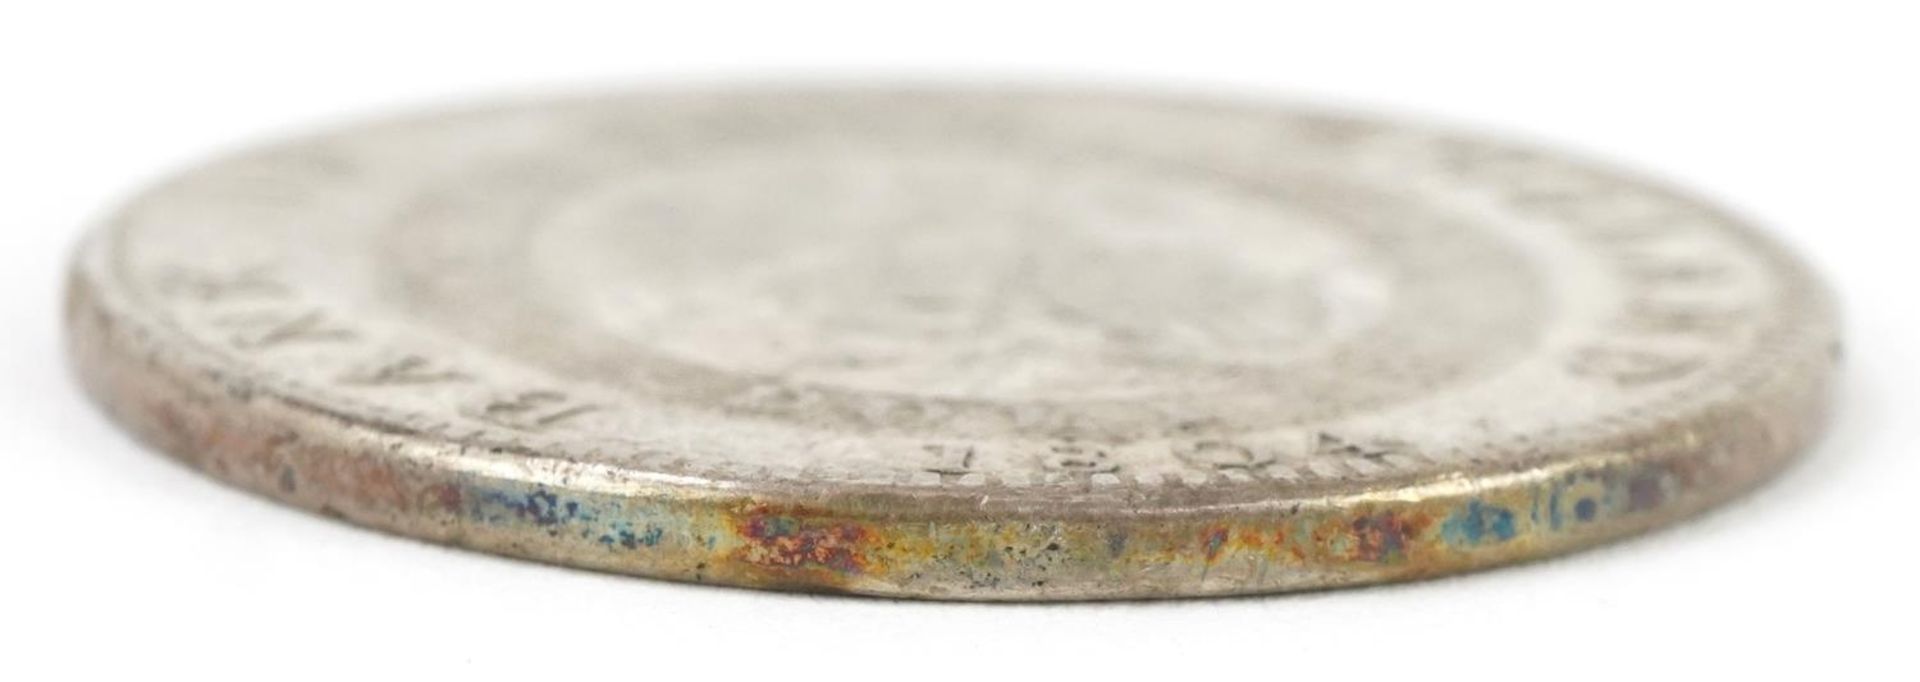 George II 1804 Bank of England five shillings dollar - Image 3 of 3